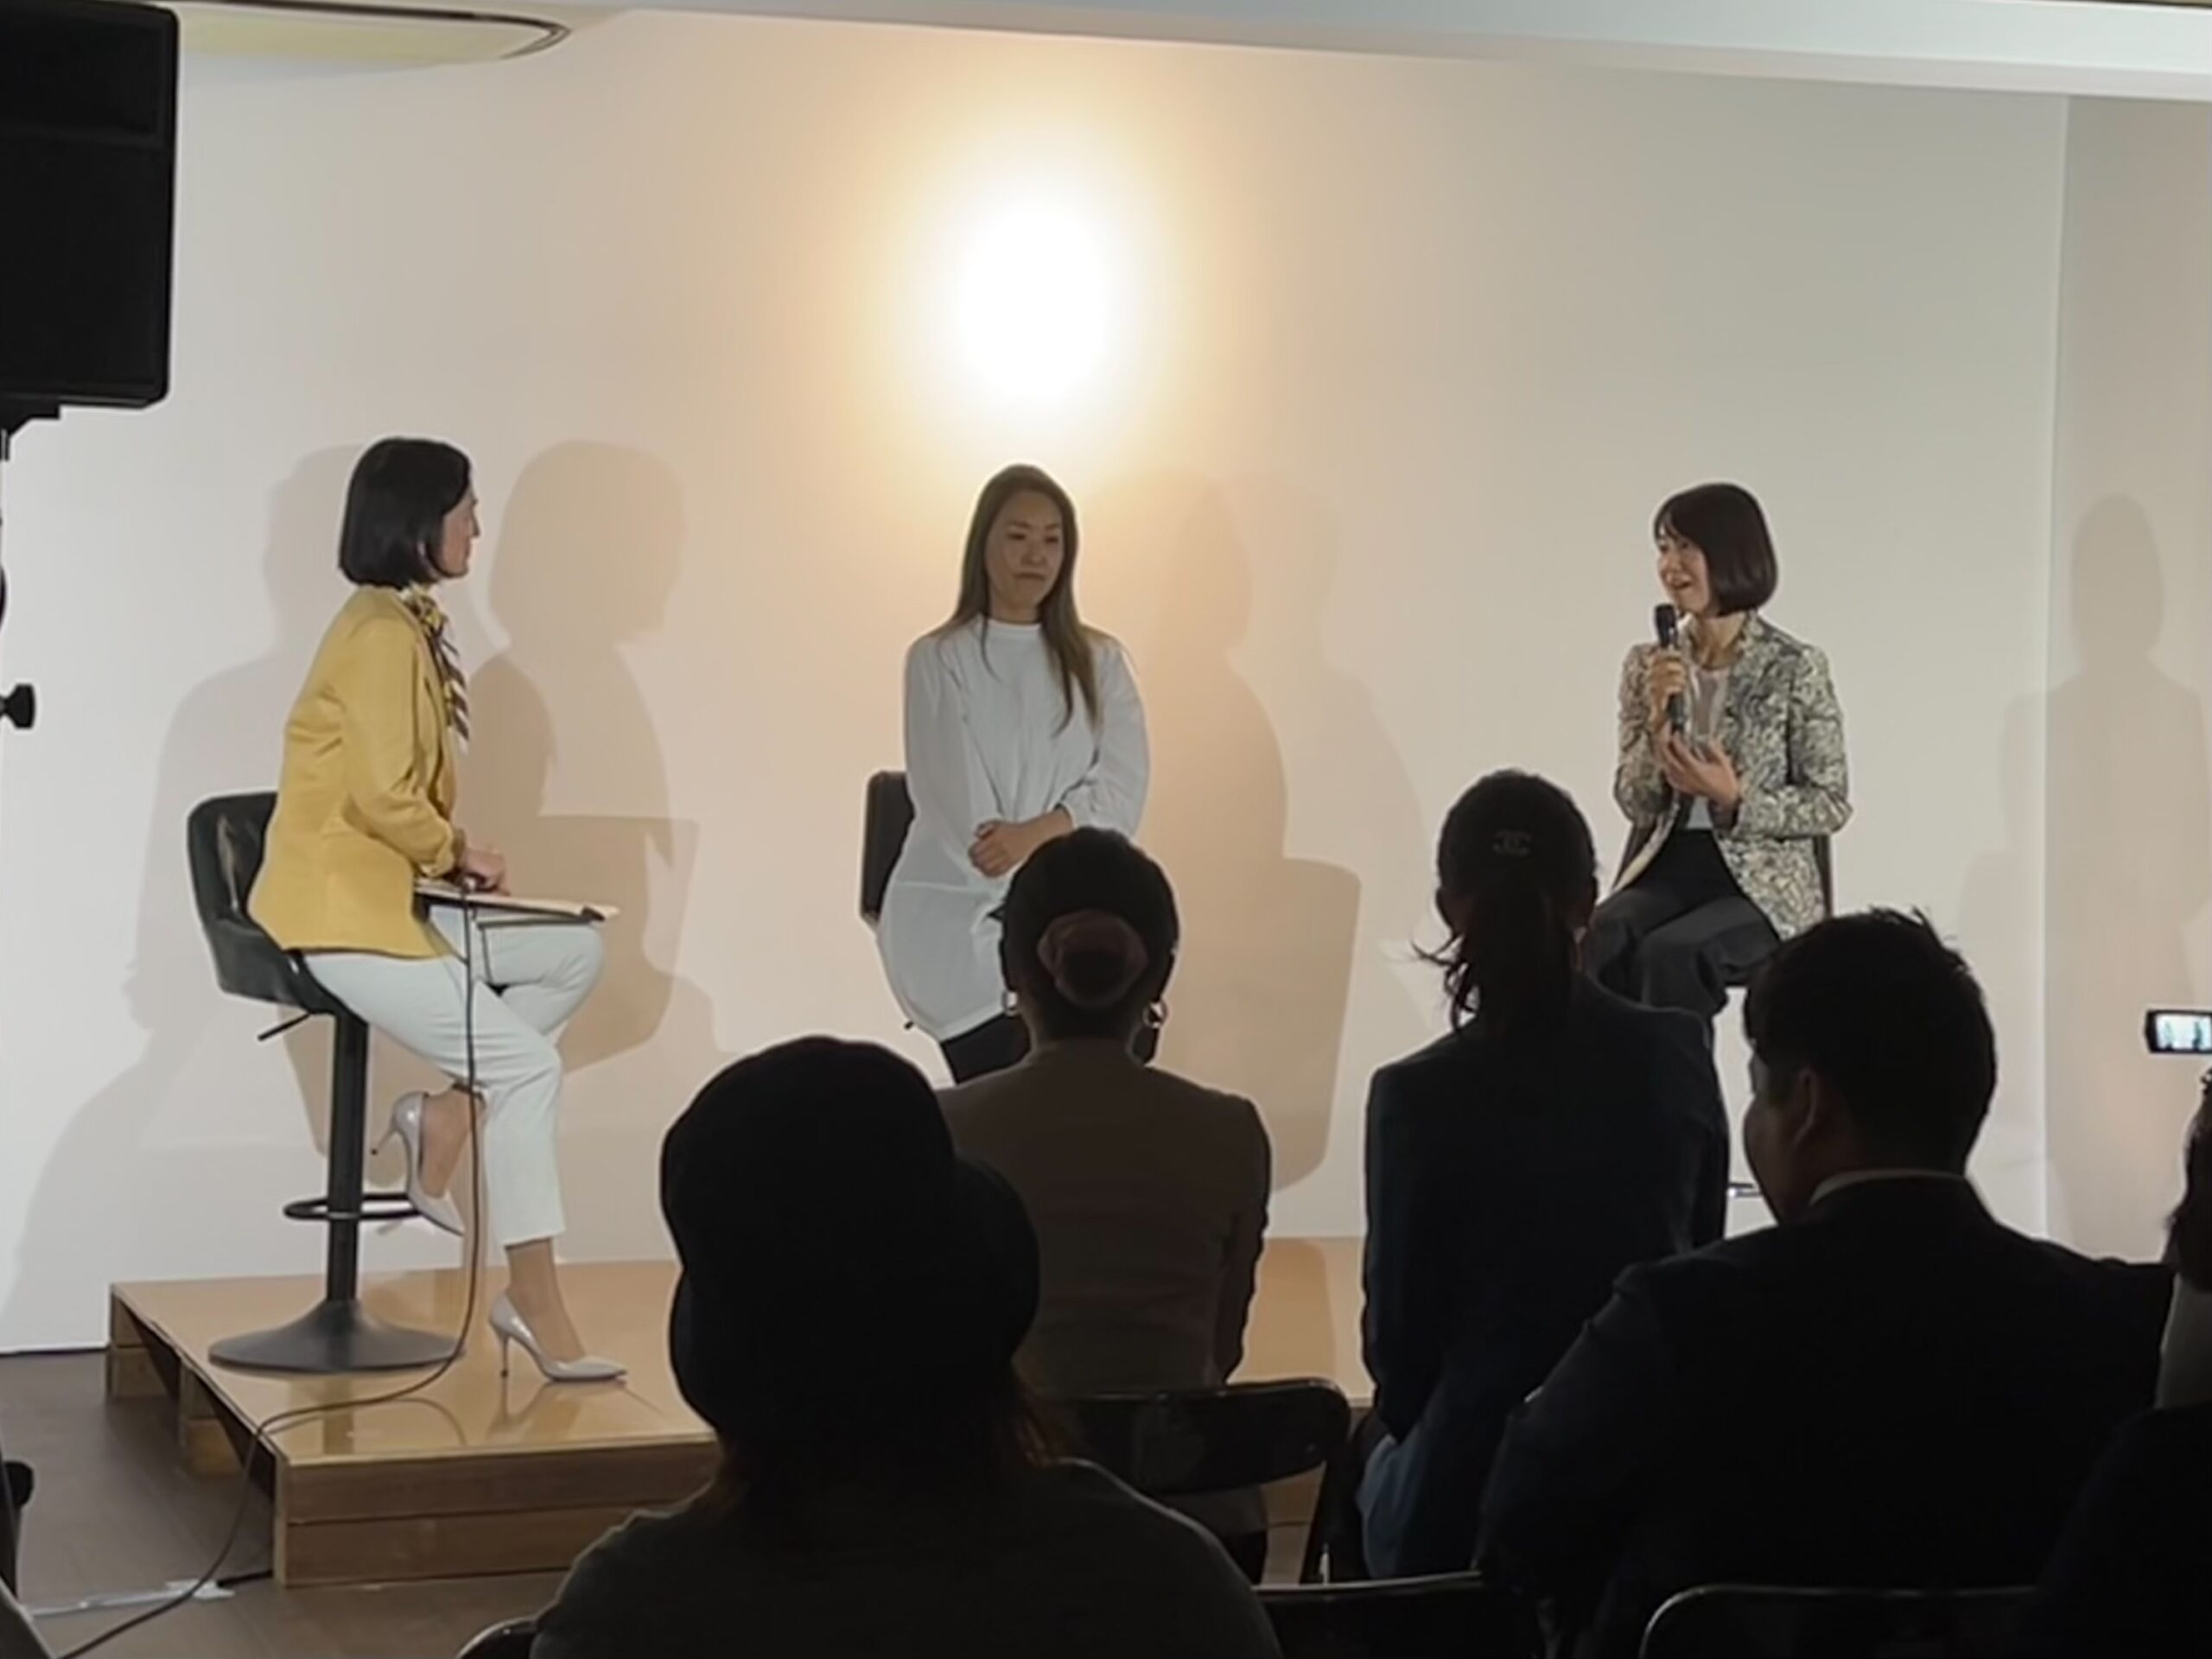 「Luciortaリリース記念イベント」内トークショーにロングライフホールディング社長桜井ひろみが登壇いたしました